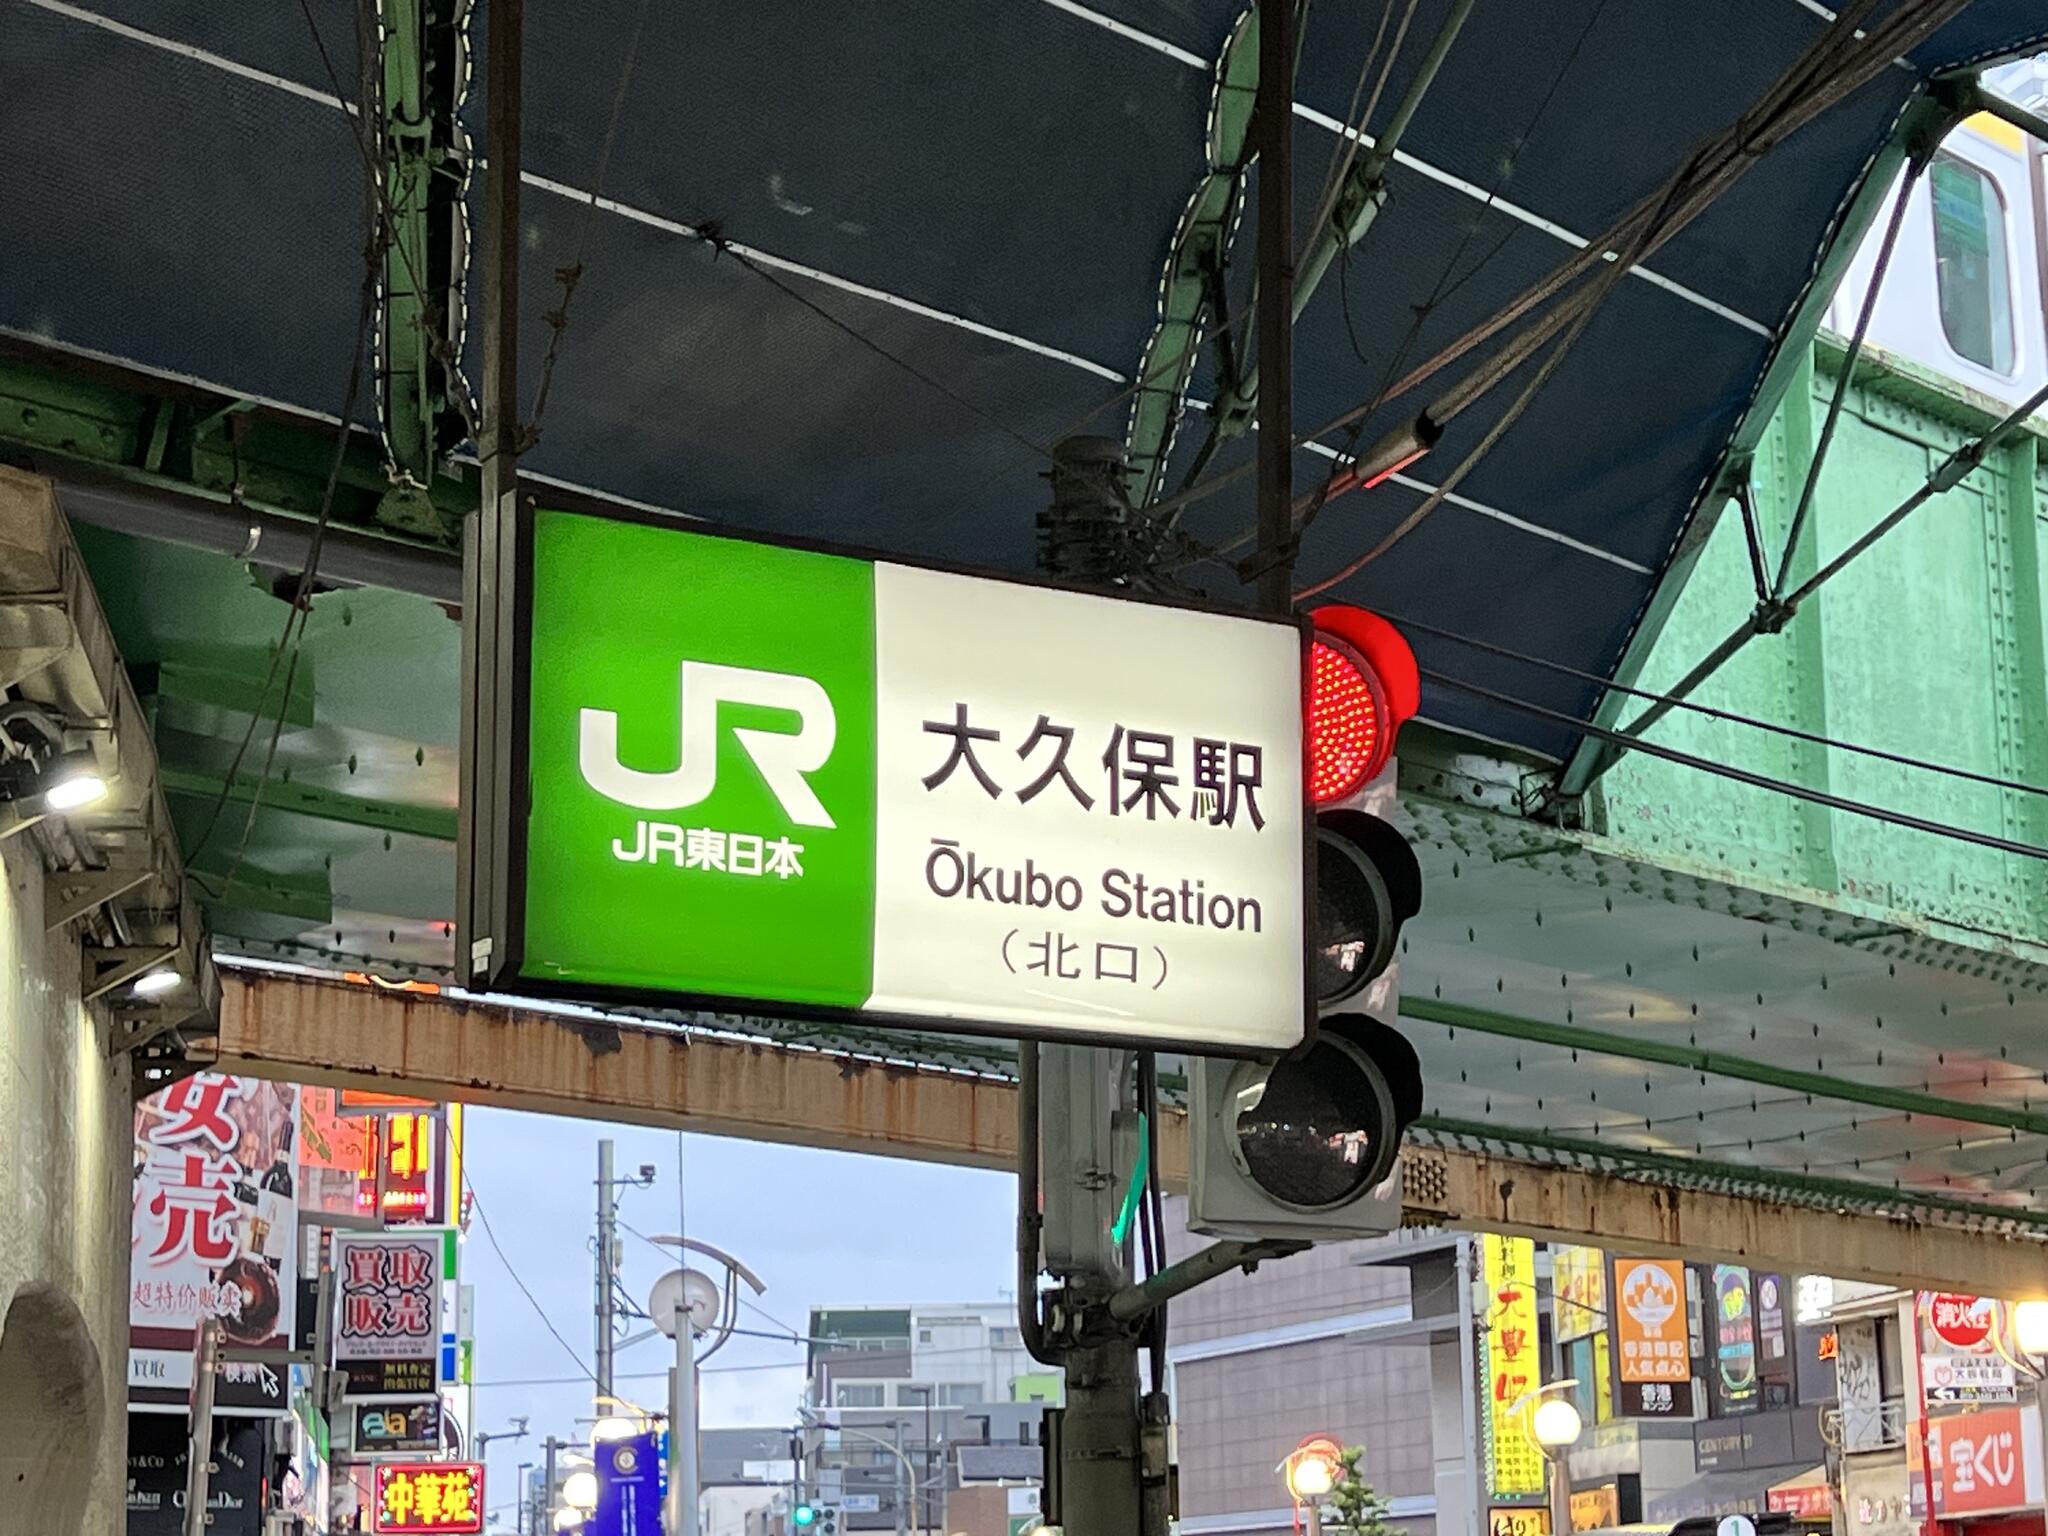 大久保駅(東京都) - 新宿区百人町/駅(JR在来線) | Yahoo!マップ